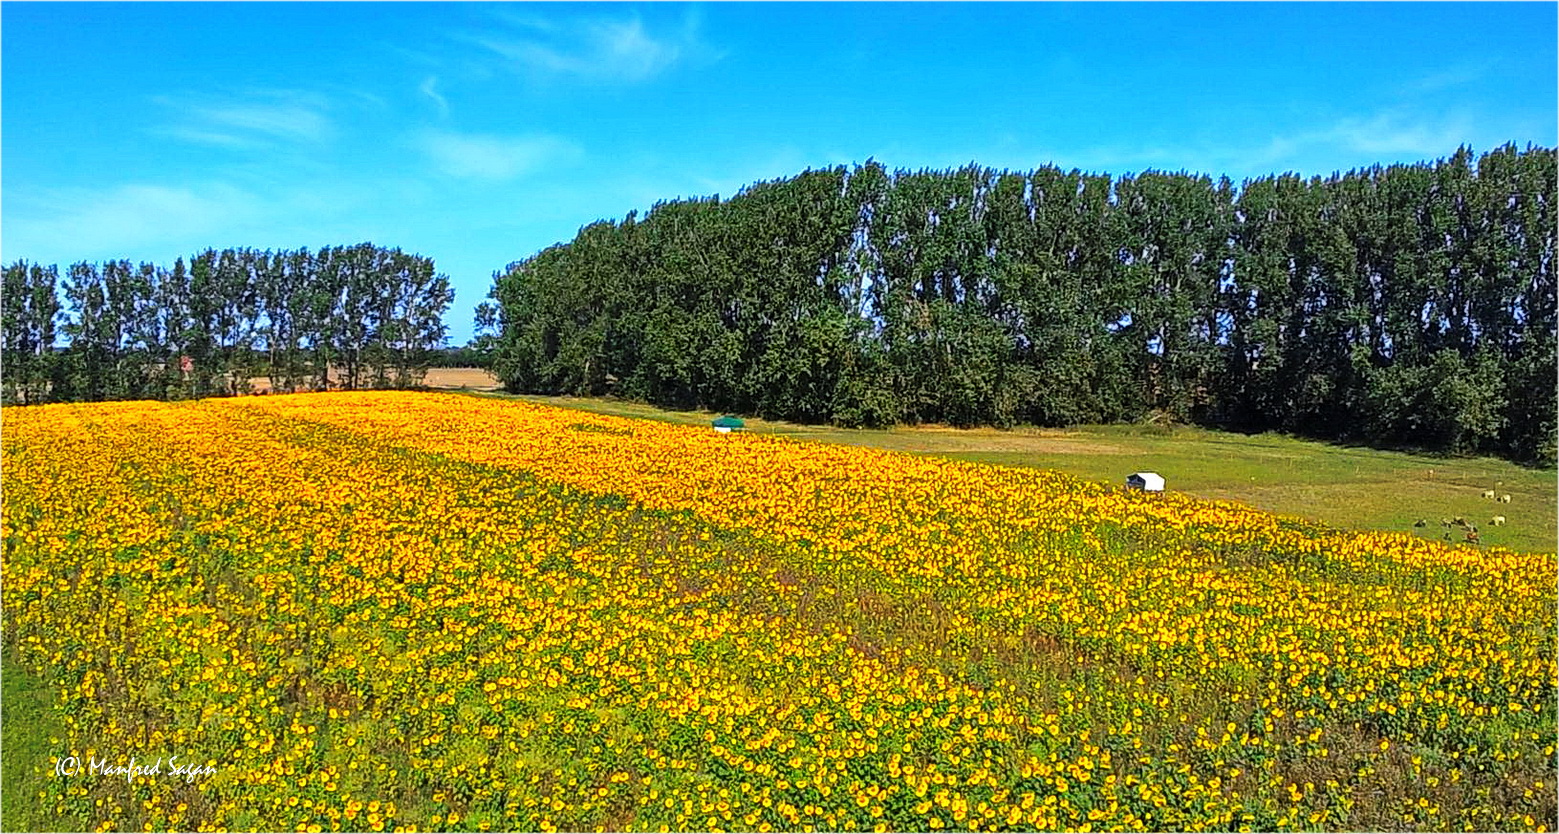 Sonnenblumenfeld in der Nähe der Hansestadt Stralsund